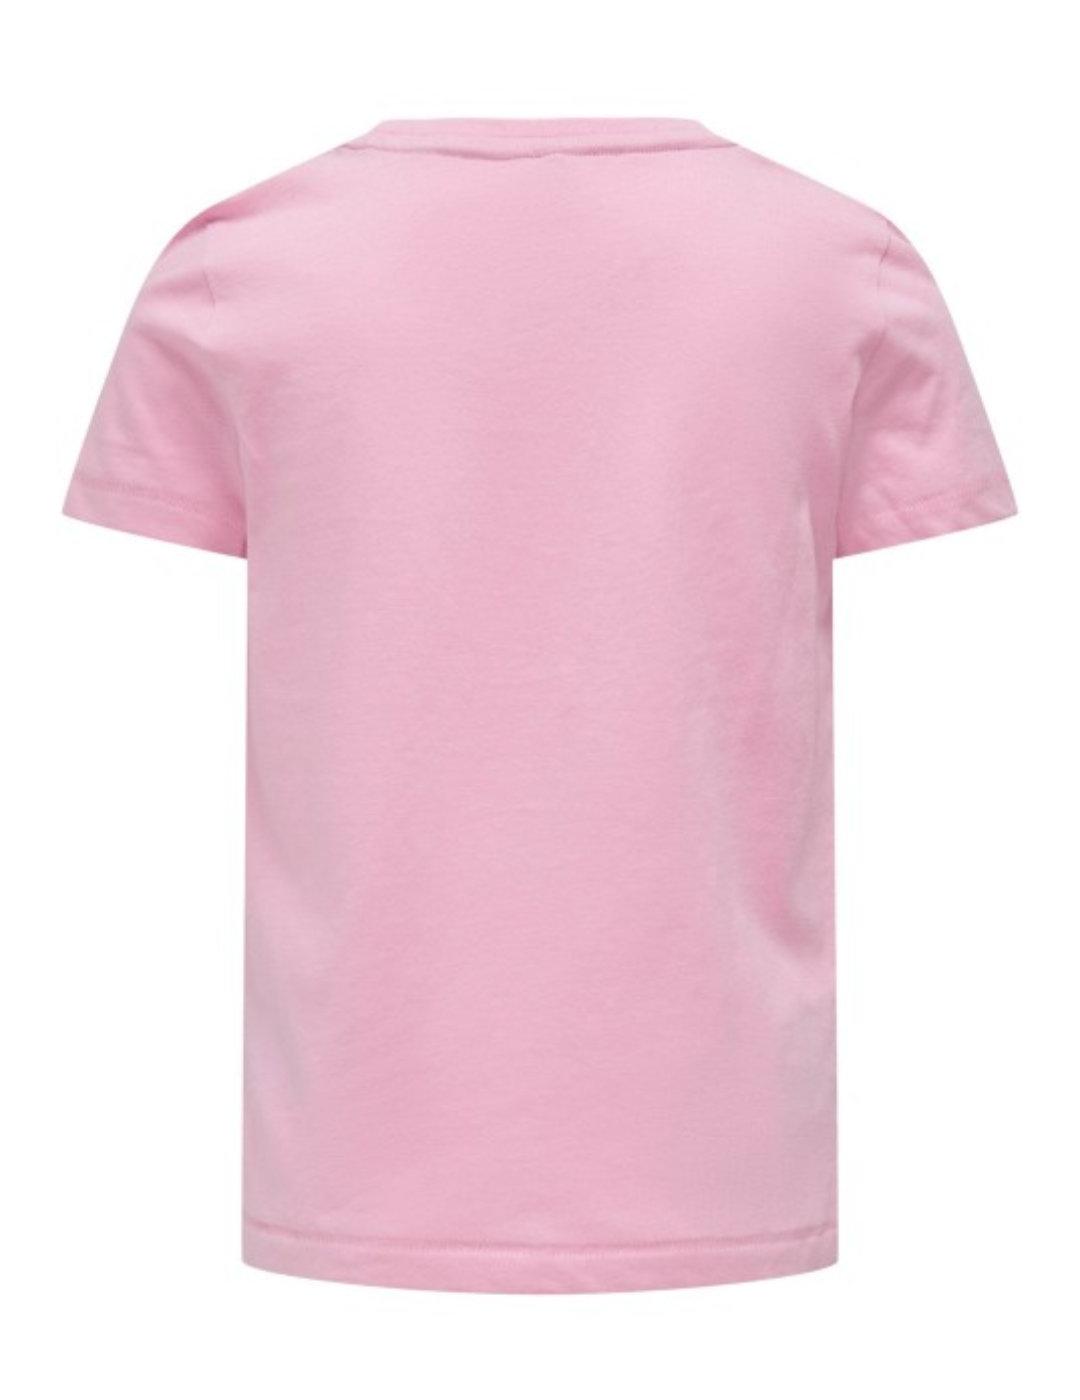 Camiseta Only Kids Gloovi rosa manga corta para niña